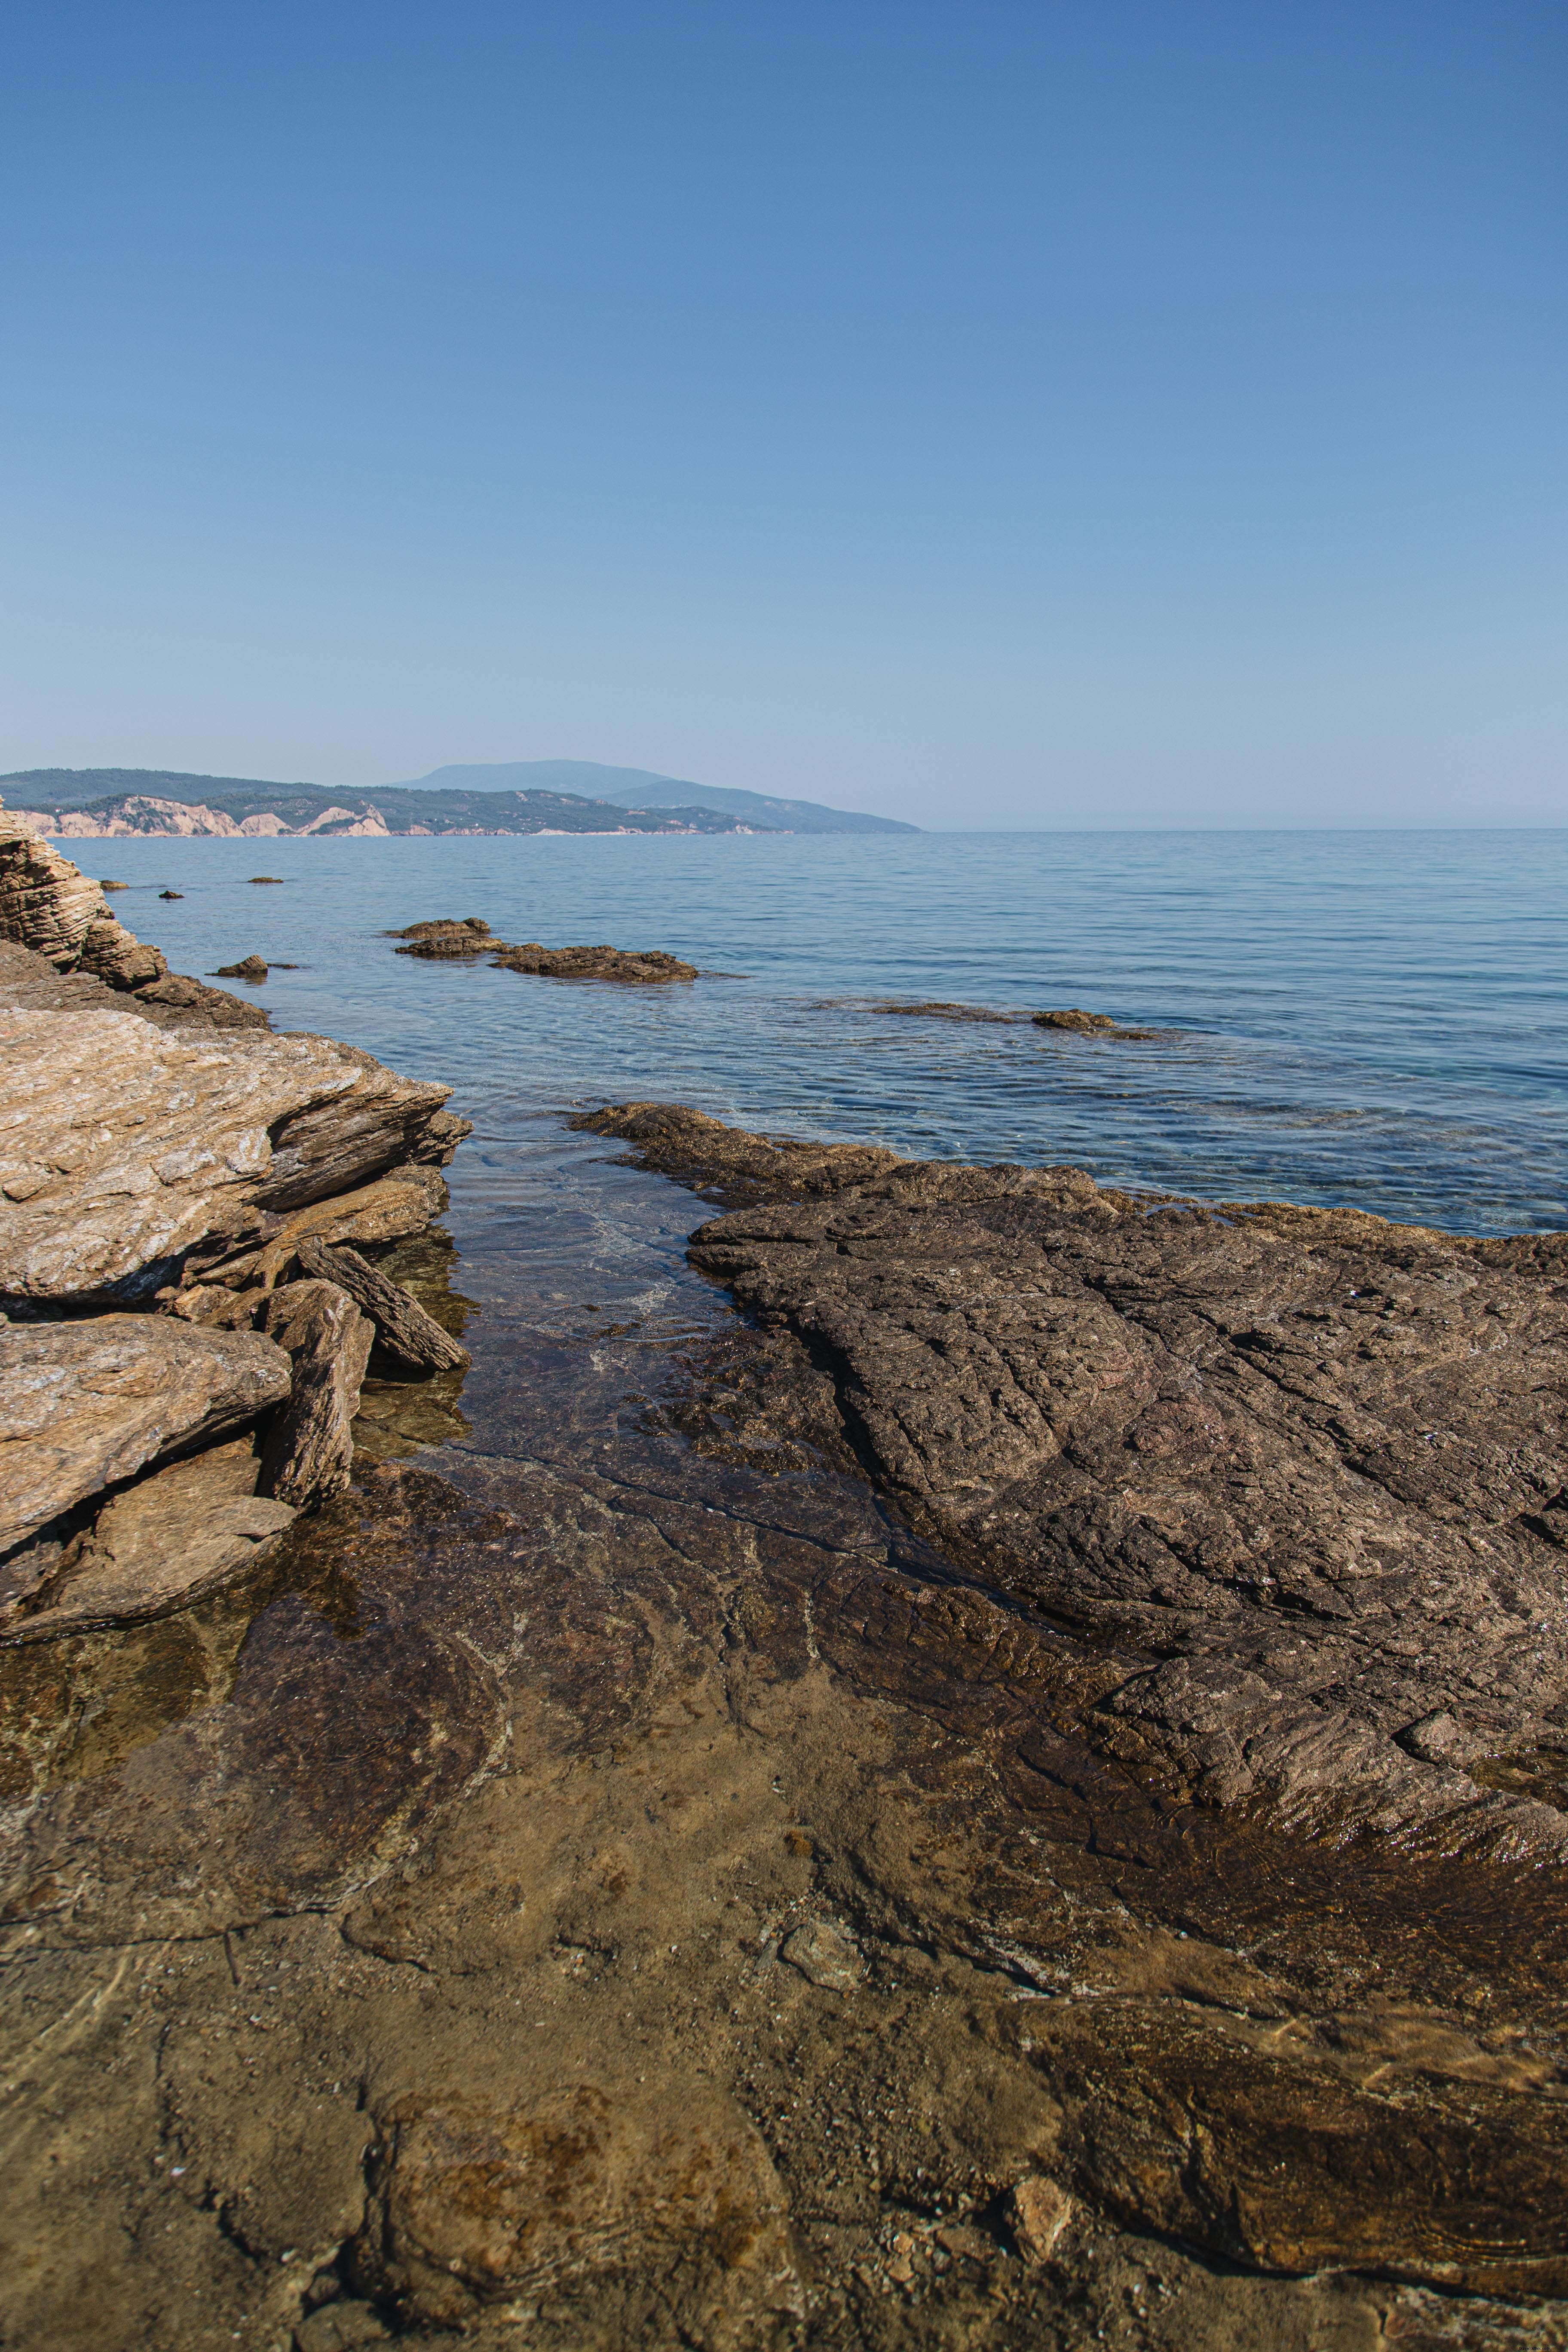 Costa rocosa con mar abierto y cielo azul Foto 